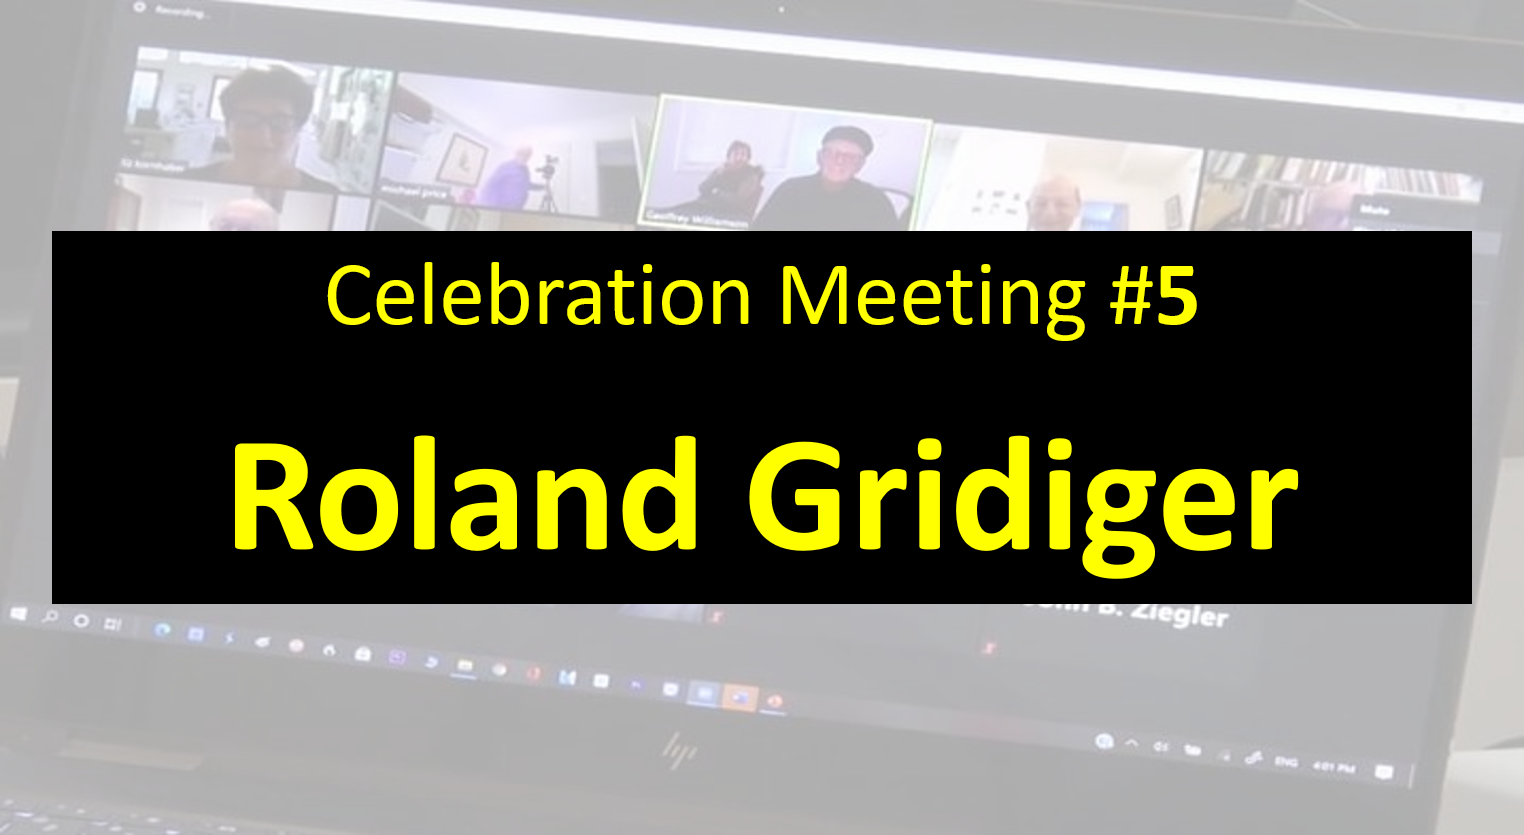 Celebration Meeting - #5 Roland Gridiger